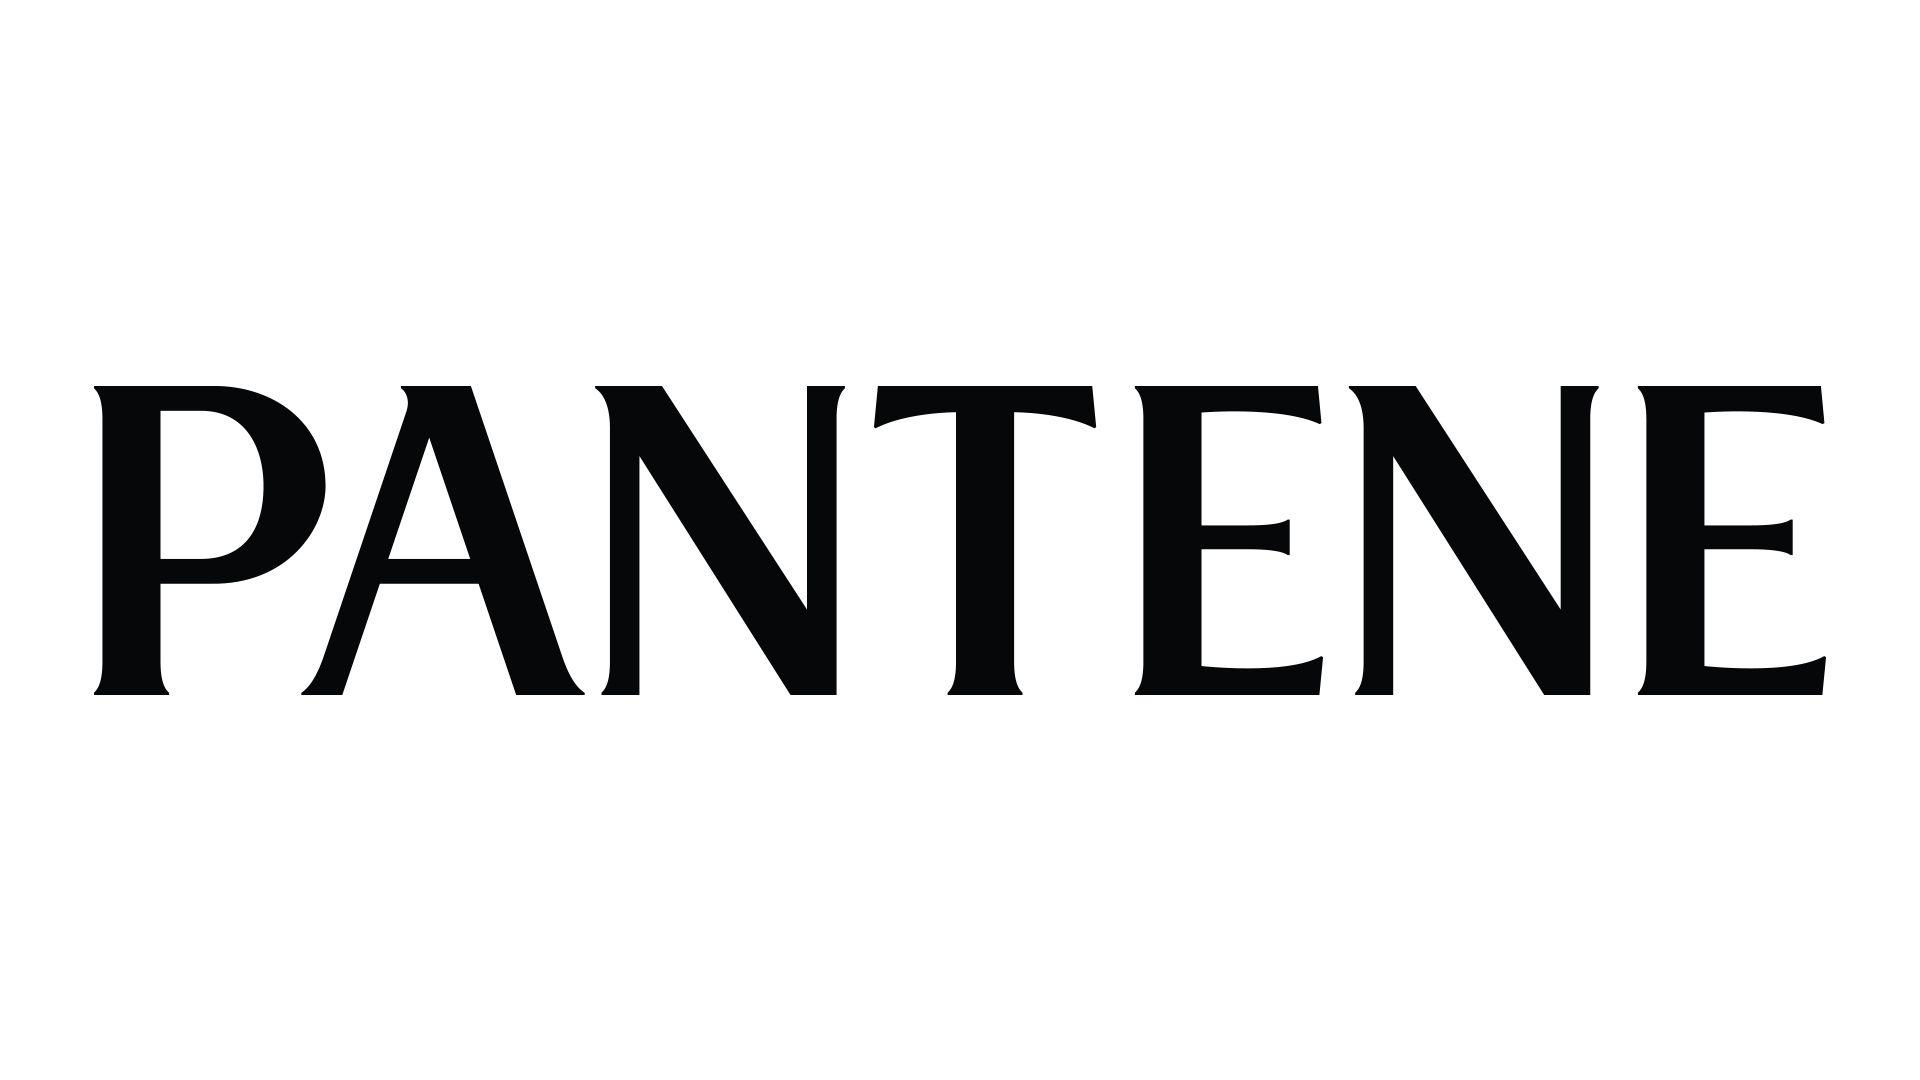 Pantene Logo - Pantene Introduces Priyanka Chopra as Newest Global Ambassador | P&G ...